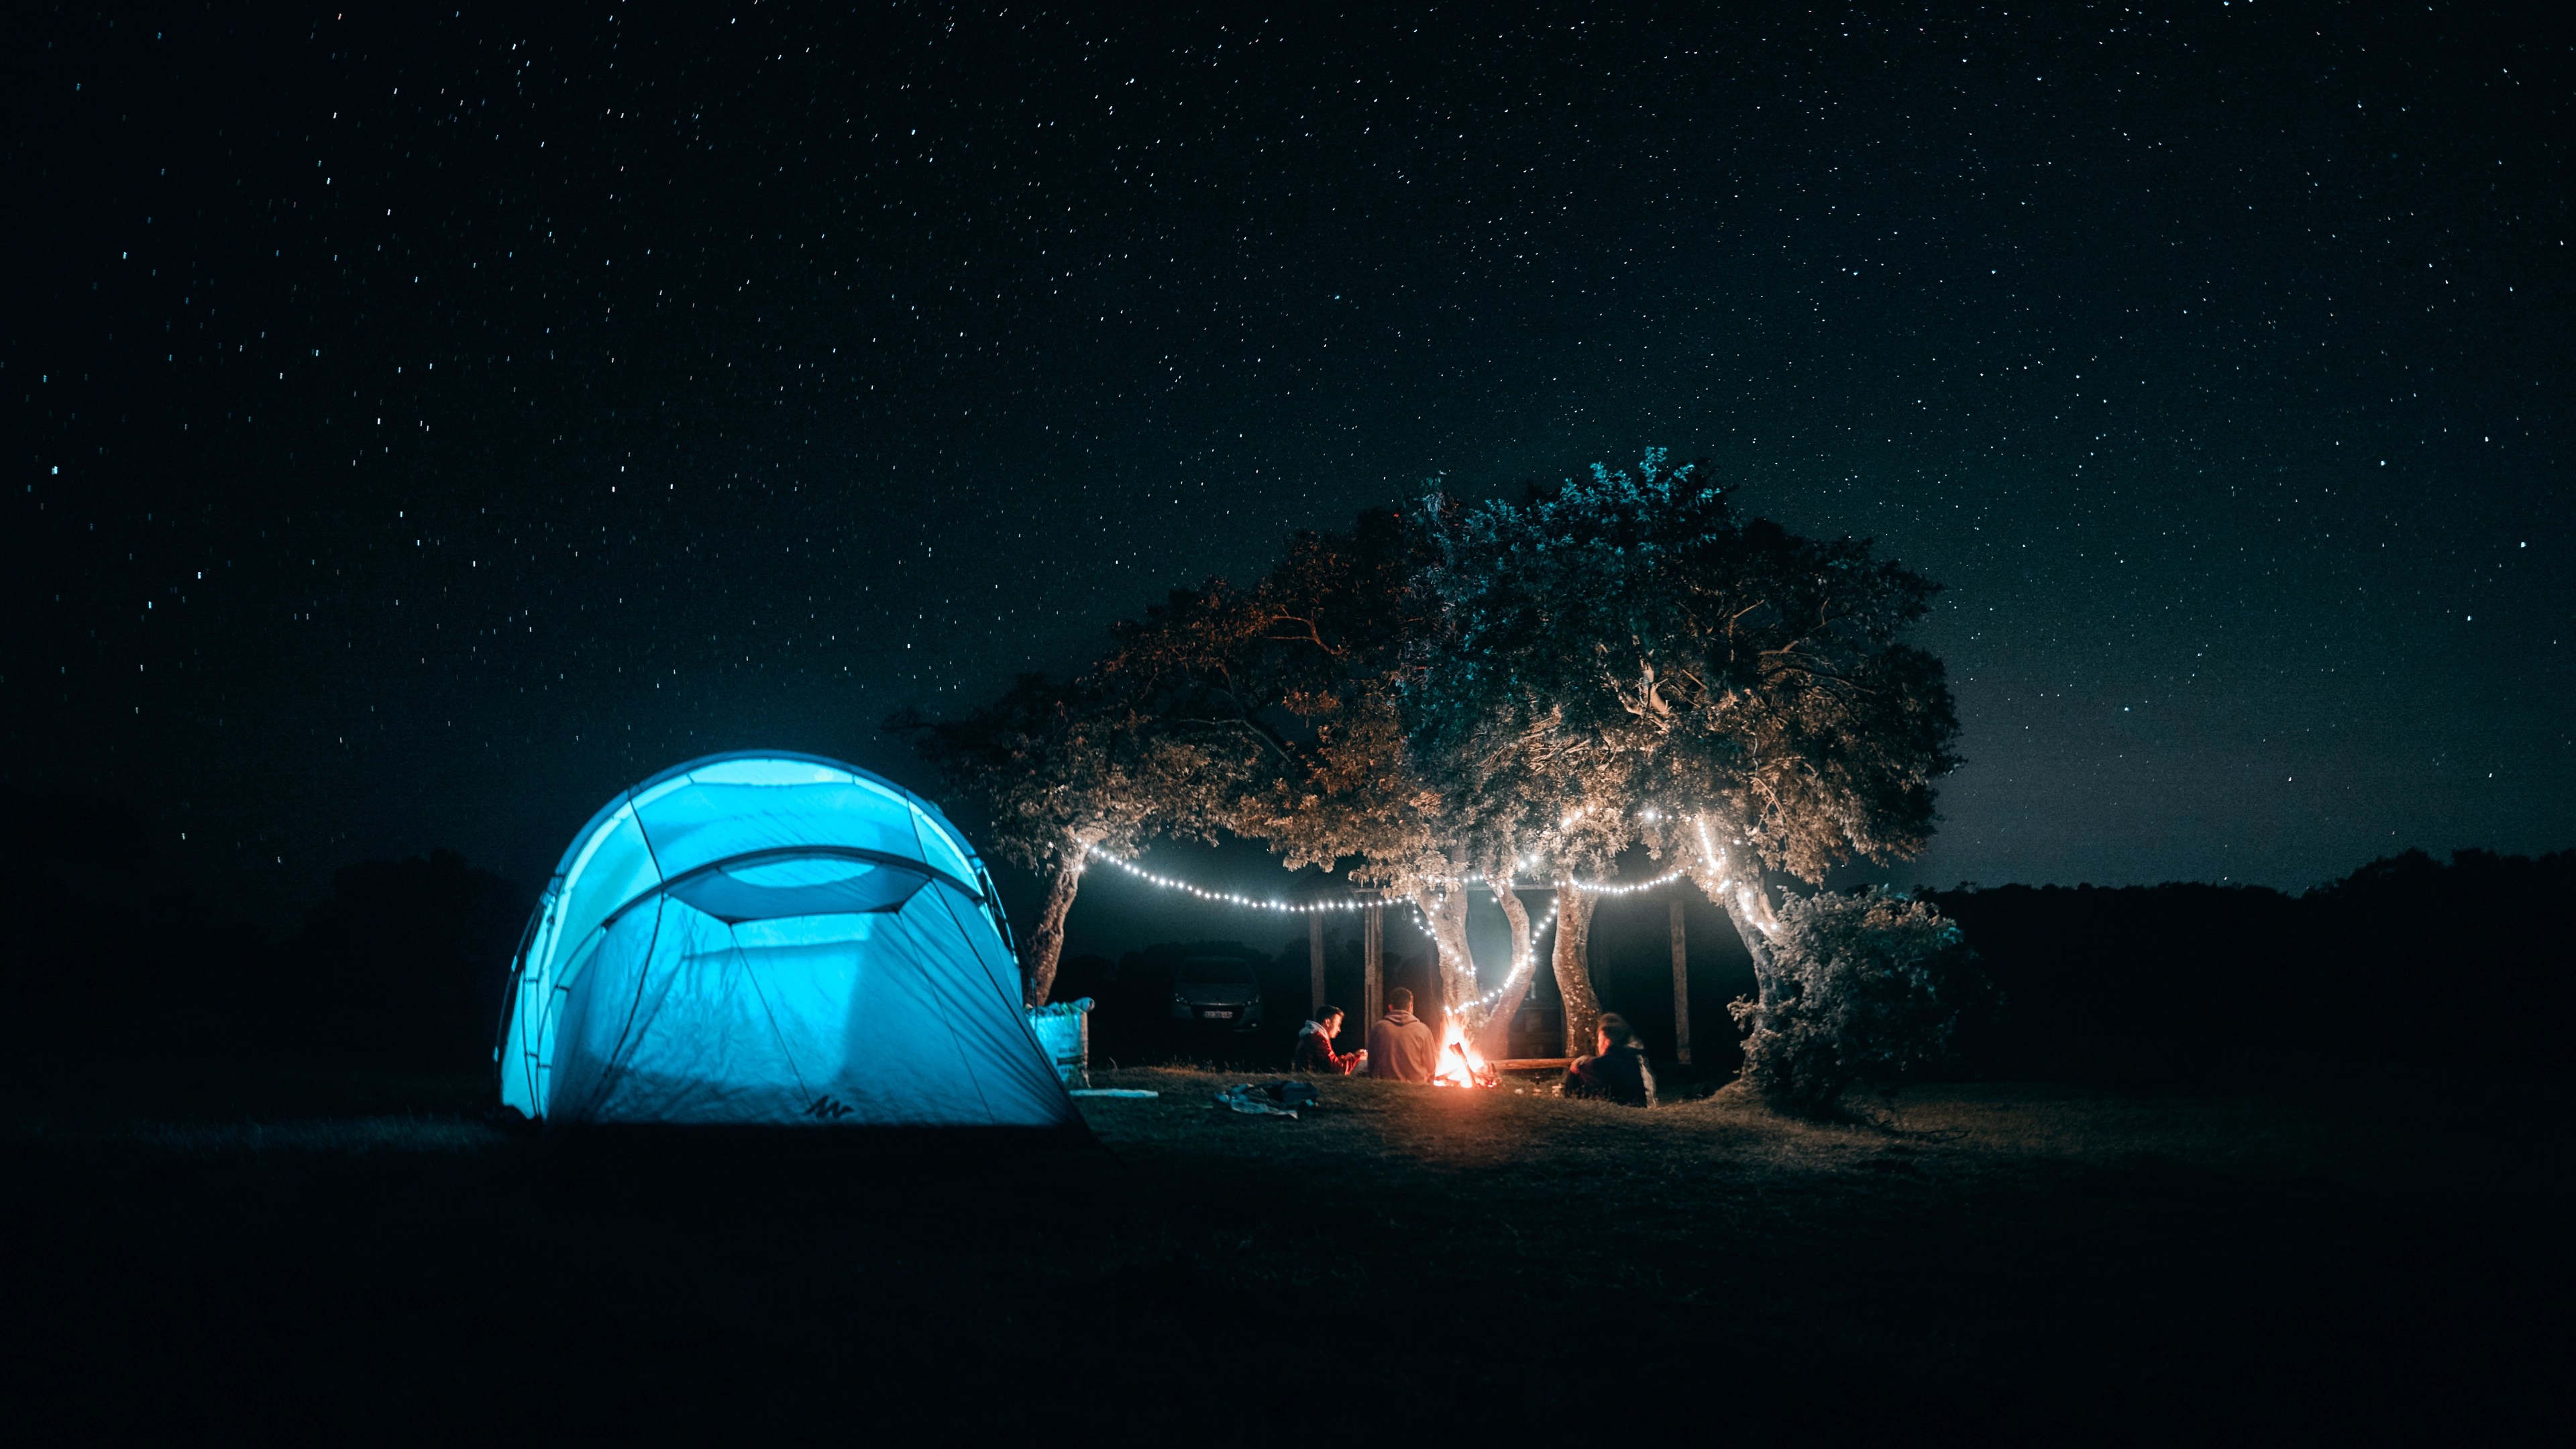 Yoann Boyer Photographe de voyages - Camping de nuit Ciel étoilé  REUNION